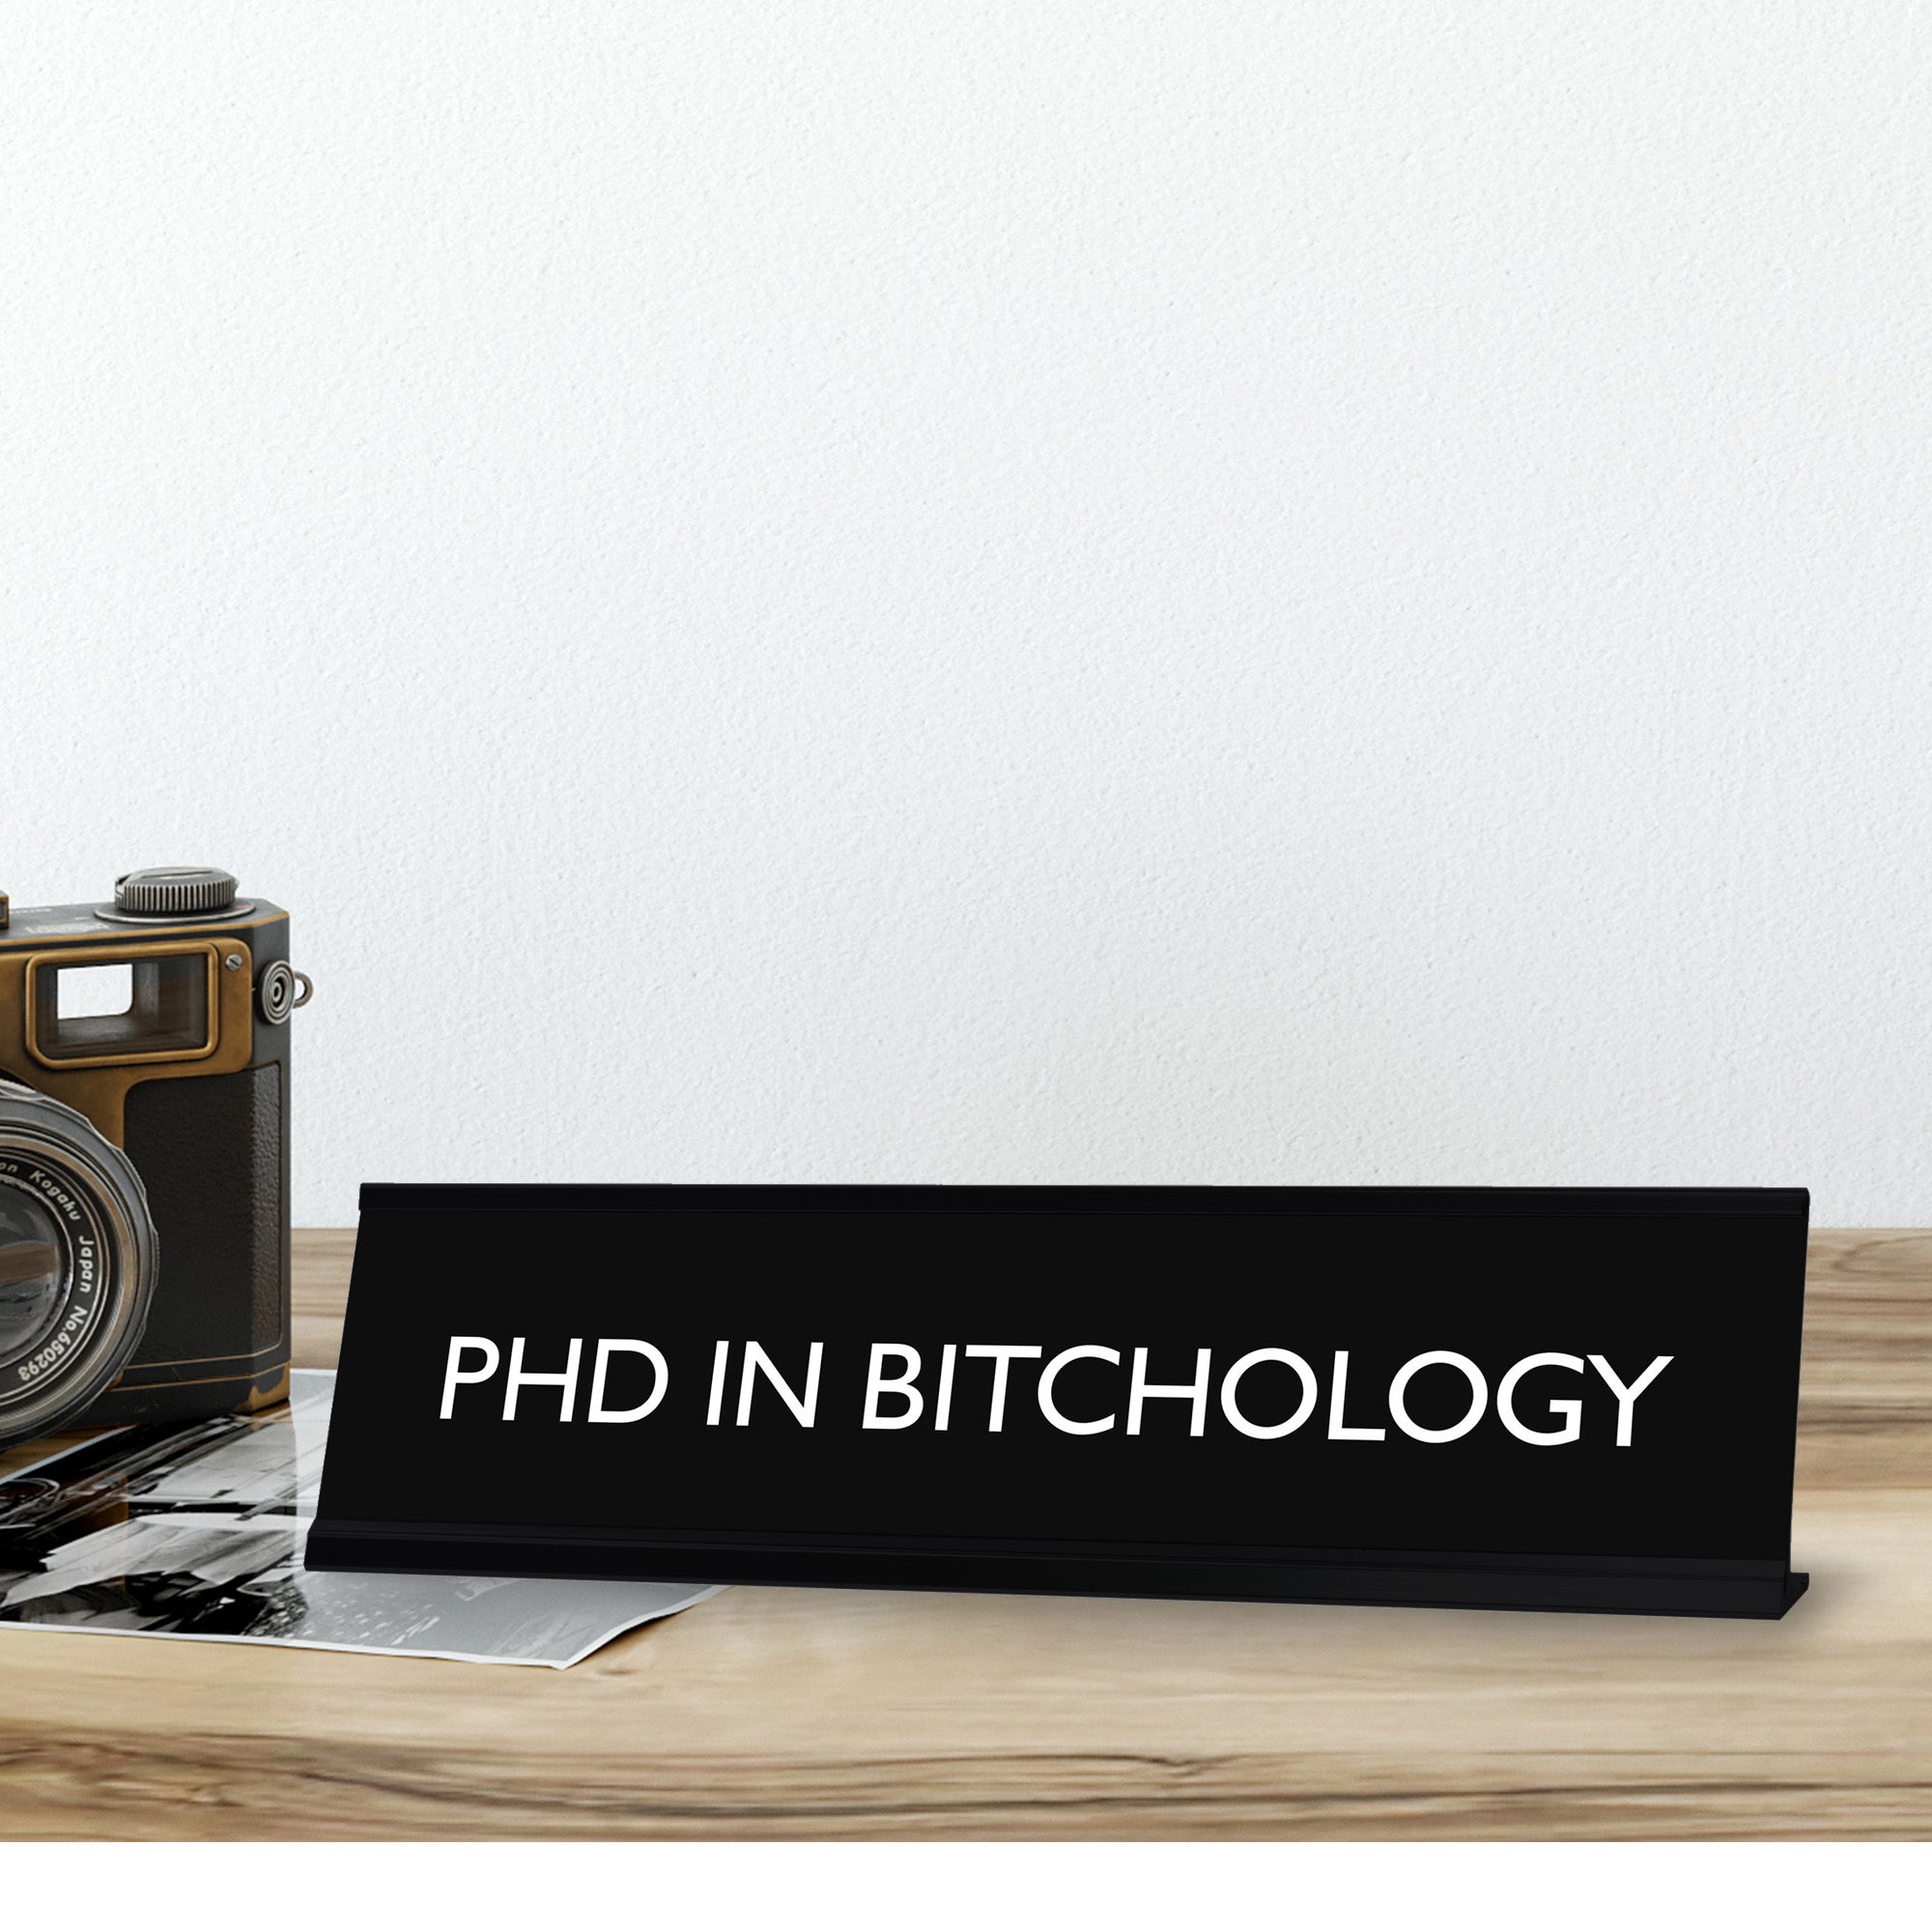 PhD IN BITCHOLOGY Novelty Desk Sign